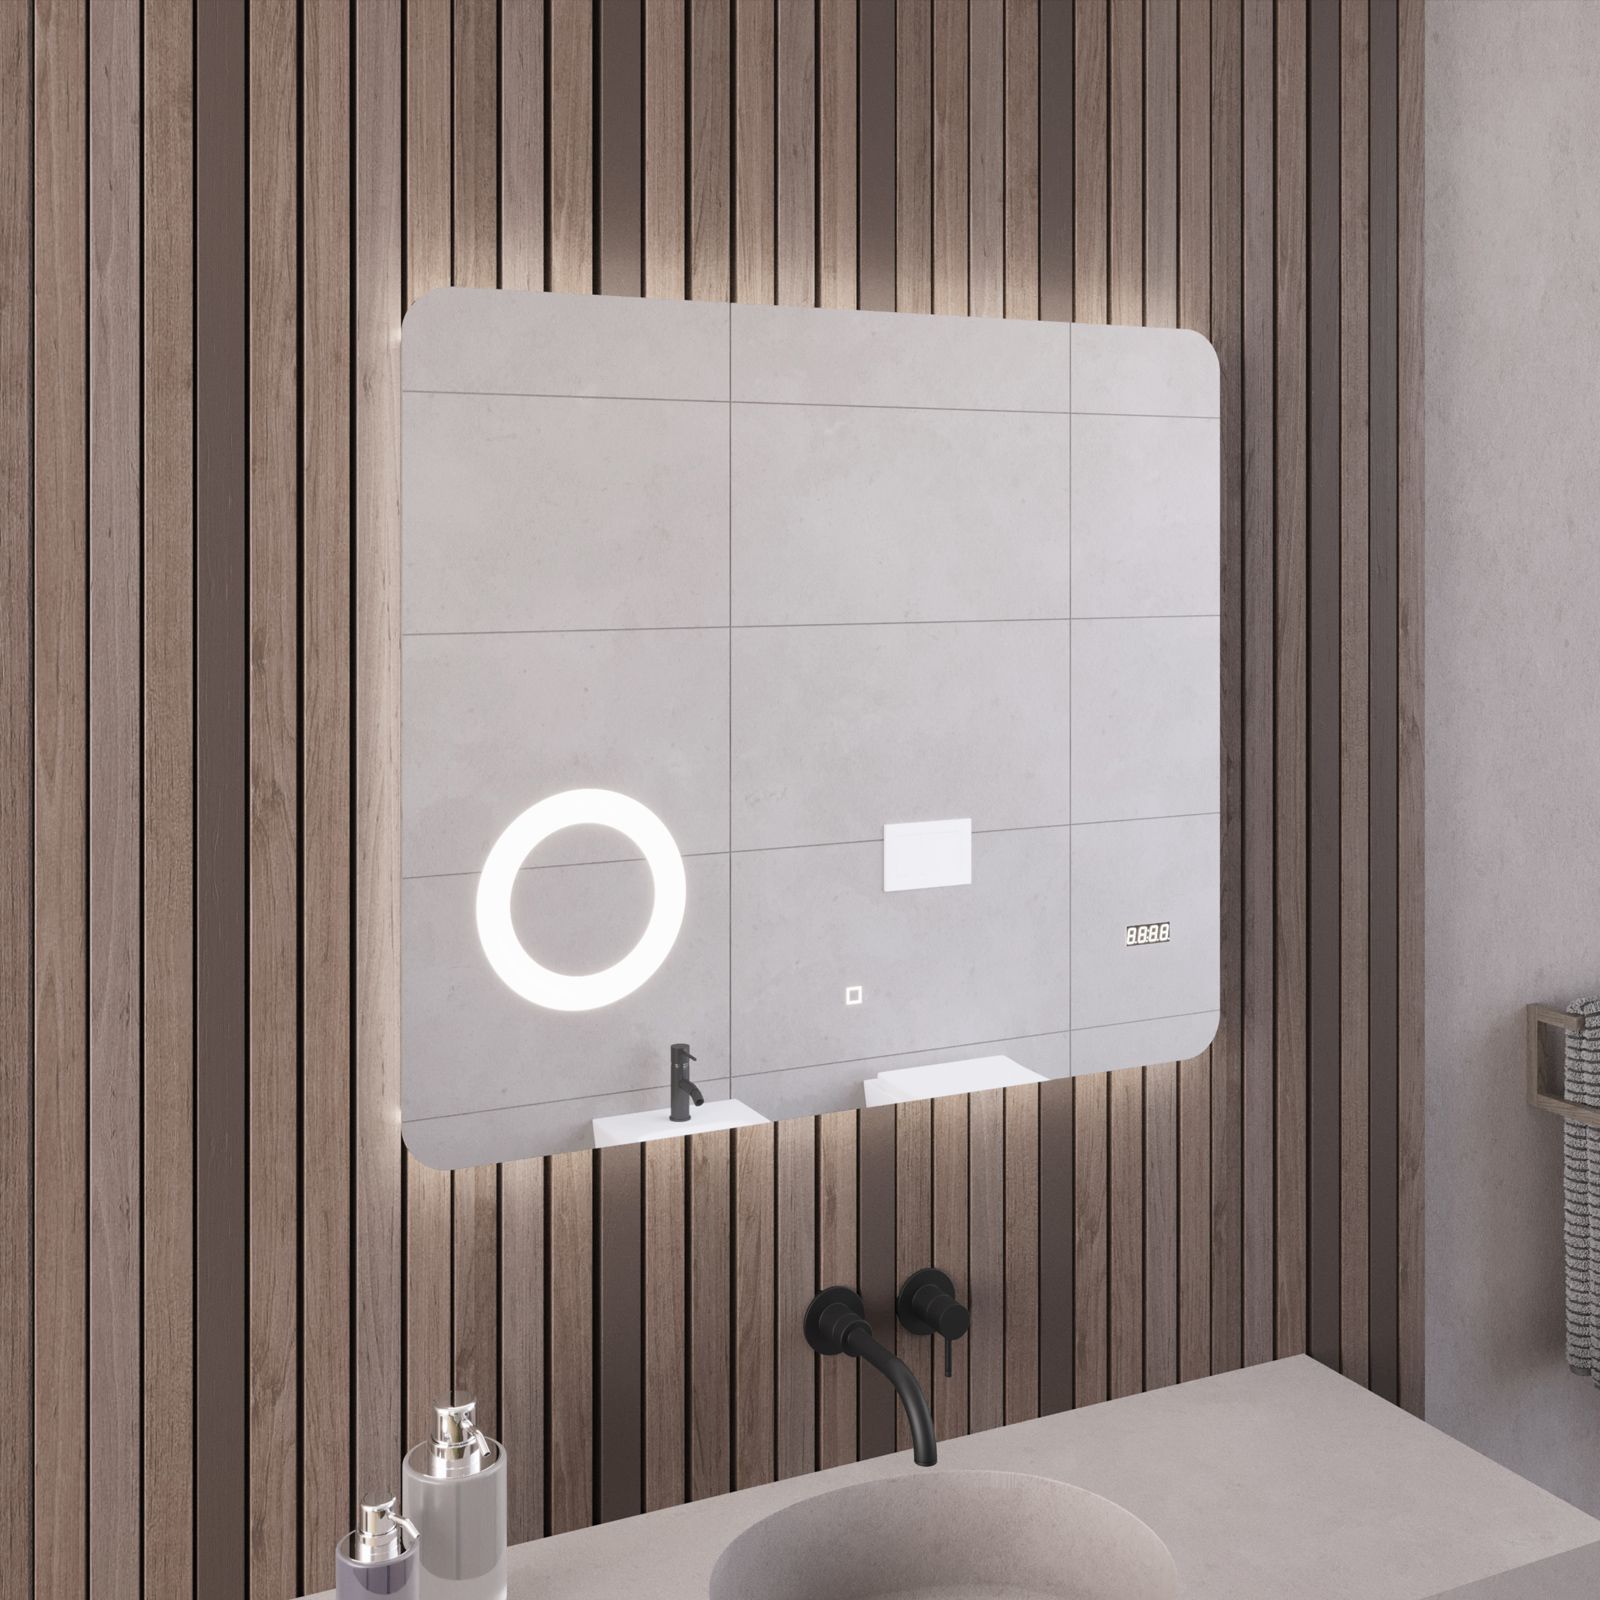 Specchio led bagno 70x120 cm touch-screen ingranditore orologio e